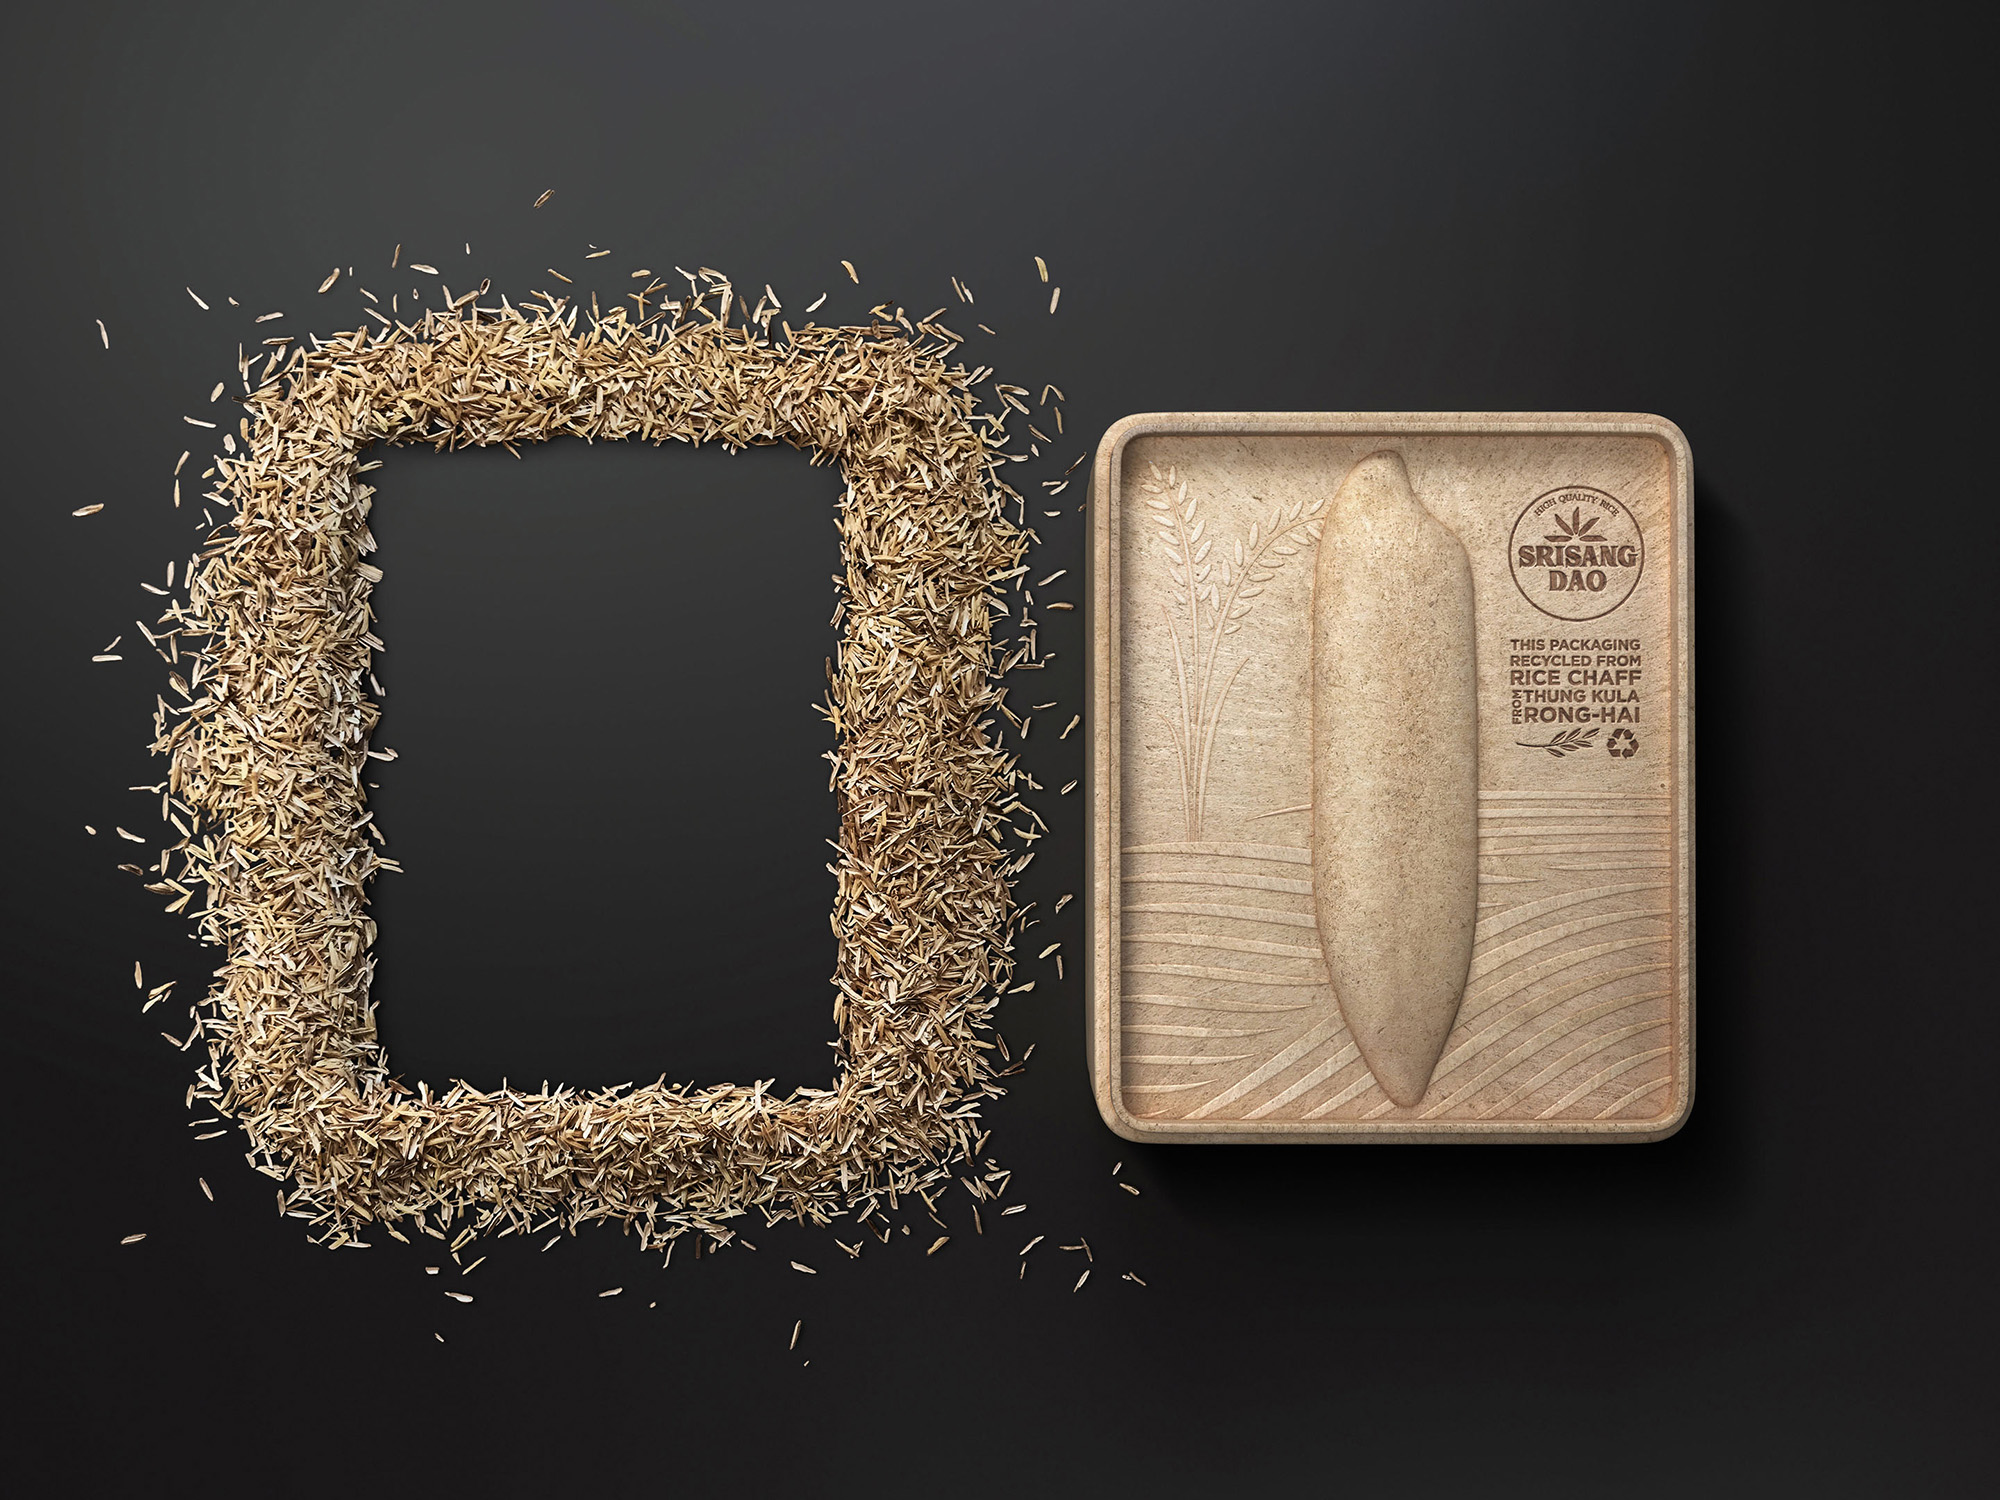 大米品牌三生稻—稻谷壳制成的大米包装